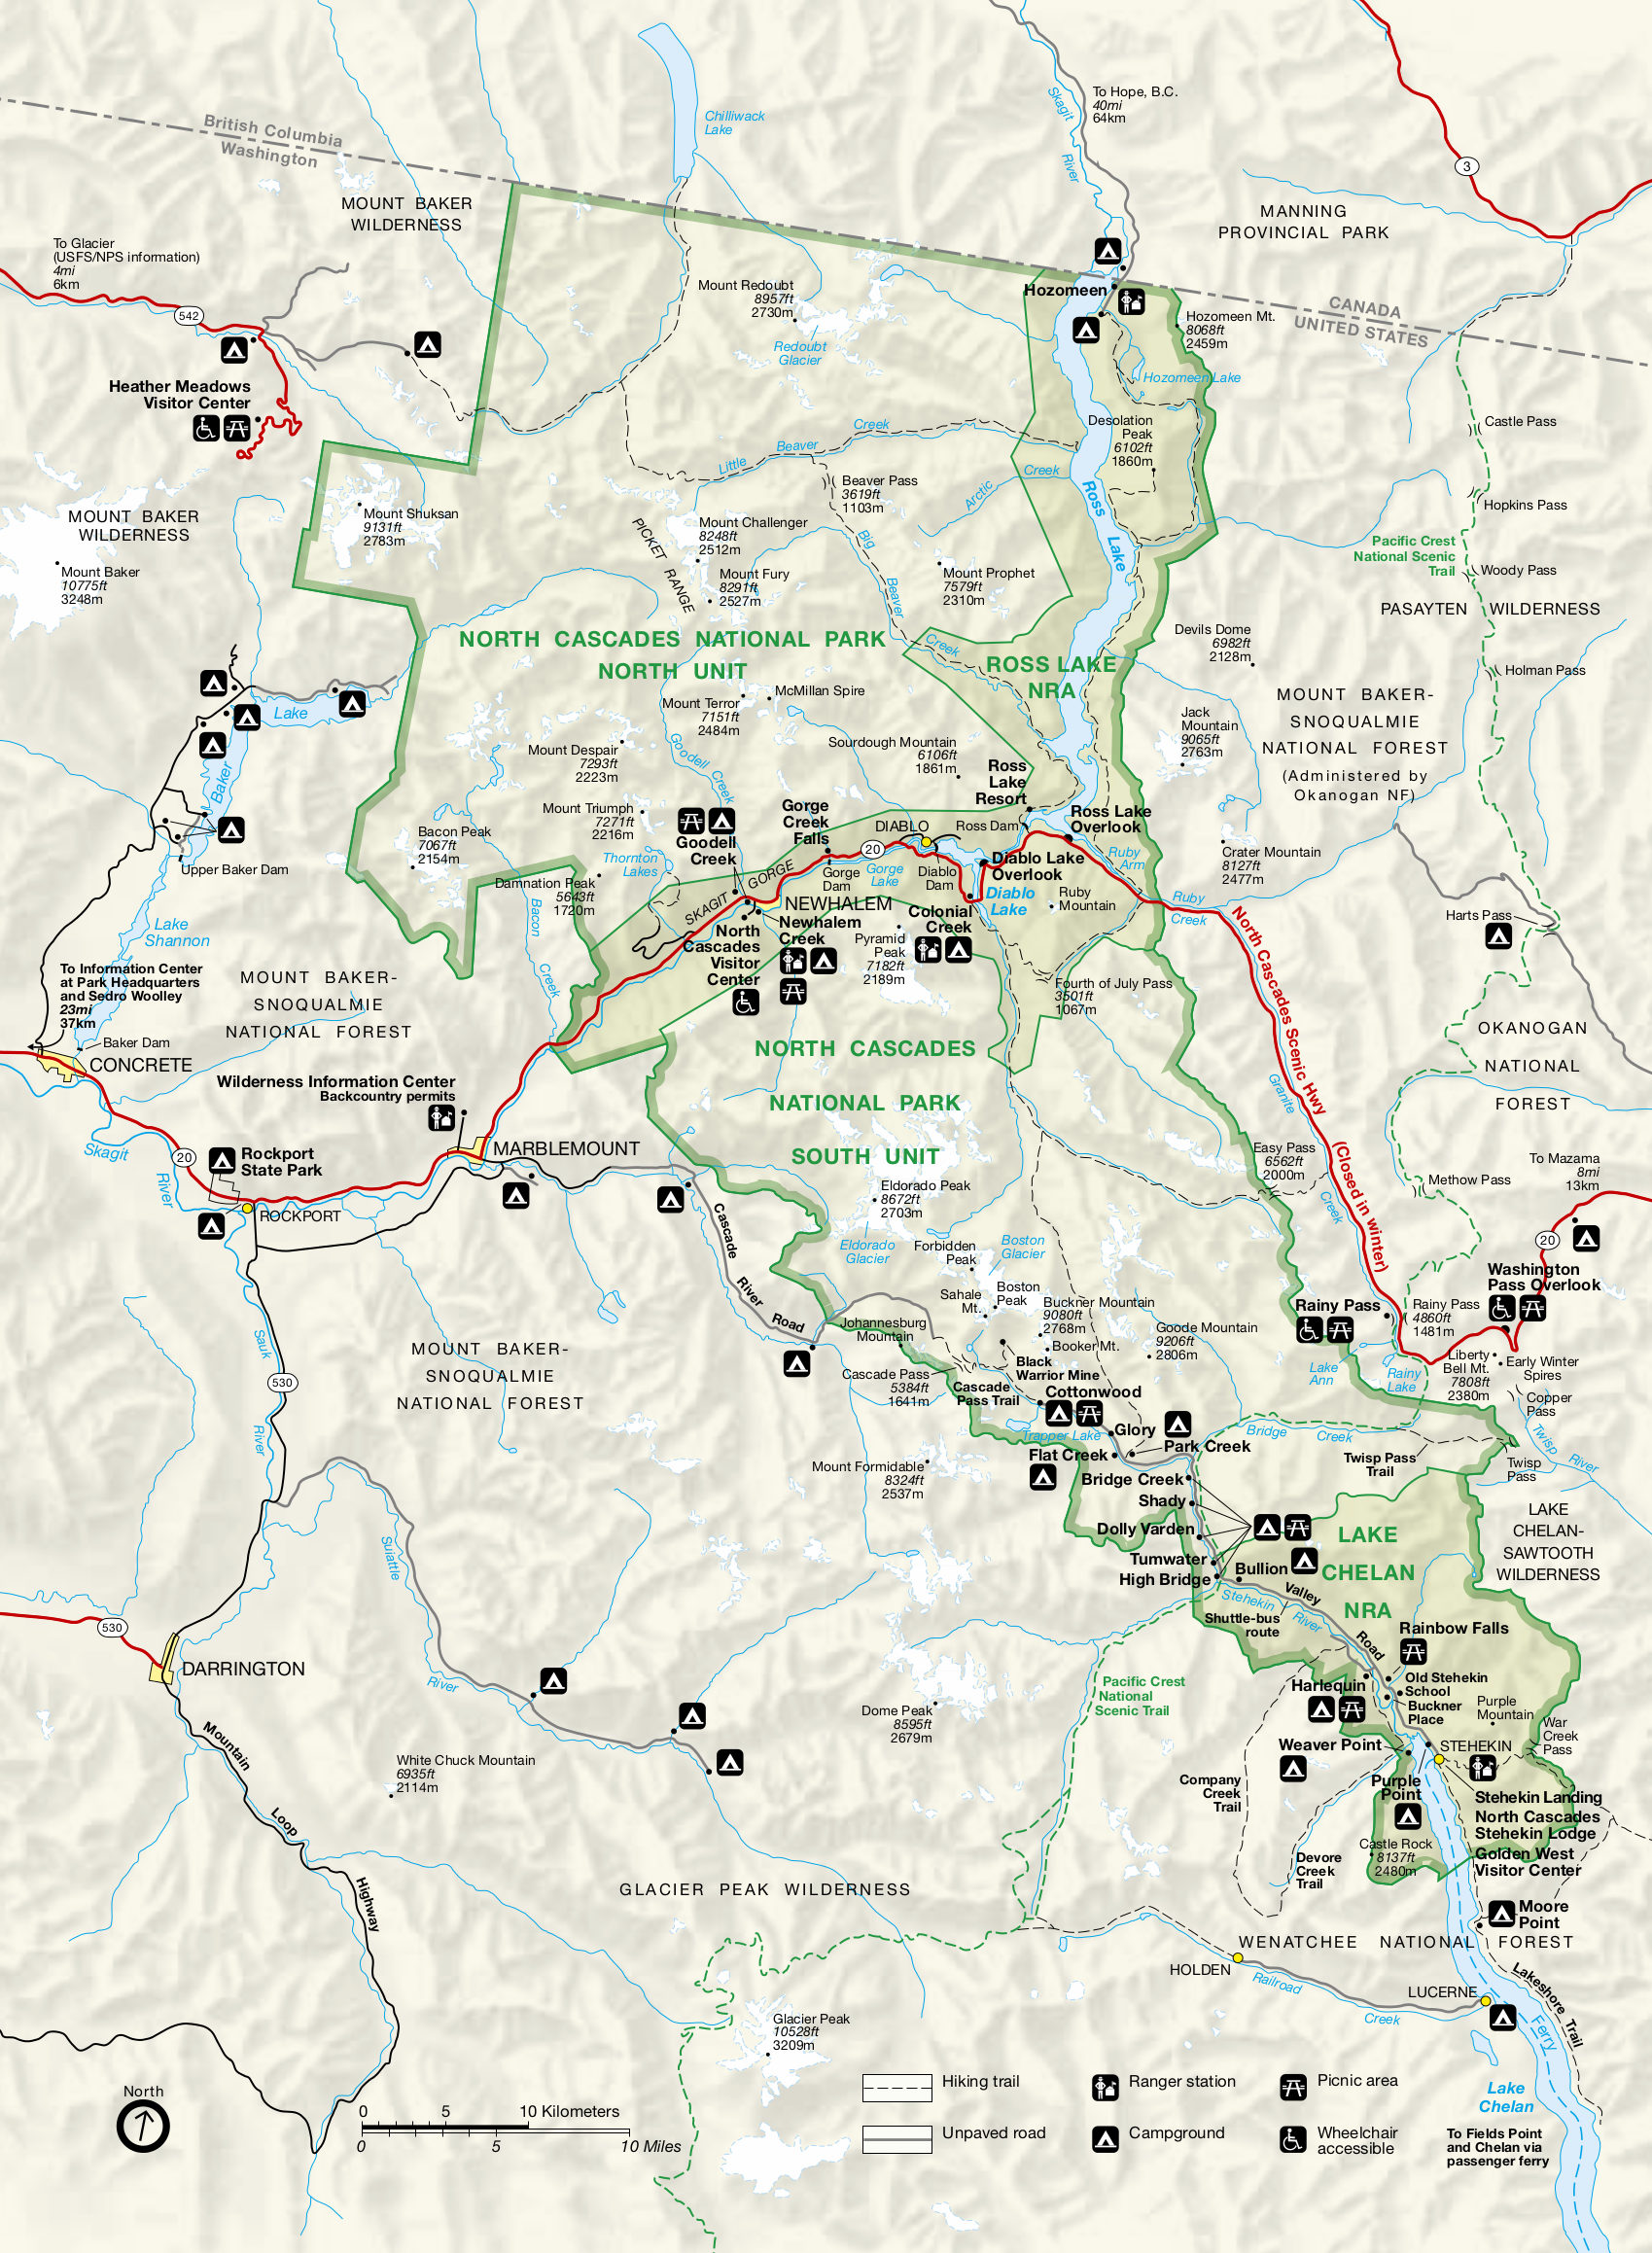 North Cascades Maps | NPMaps.com - just free maps, period.